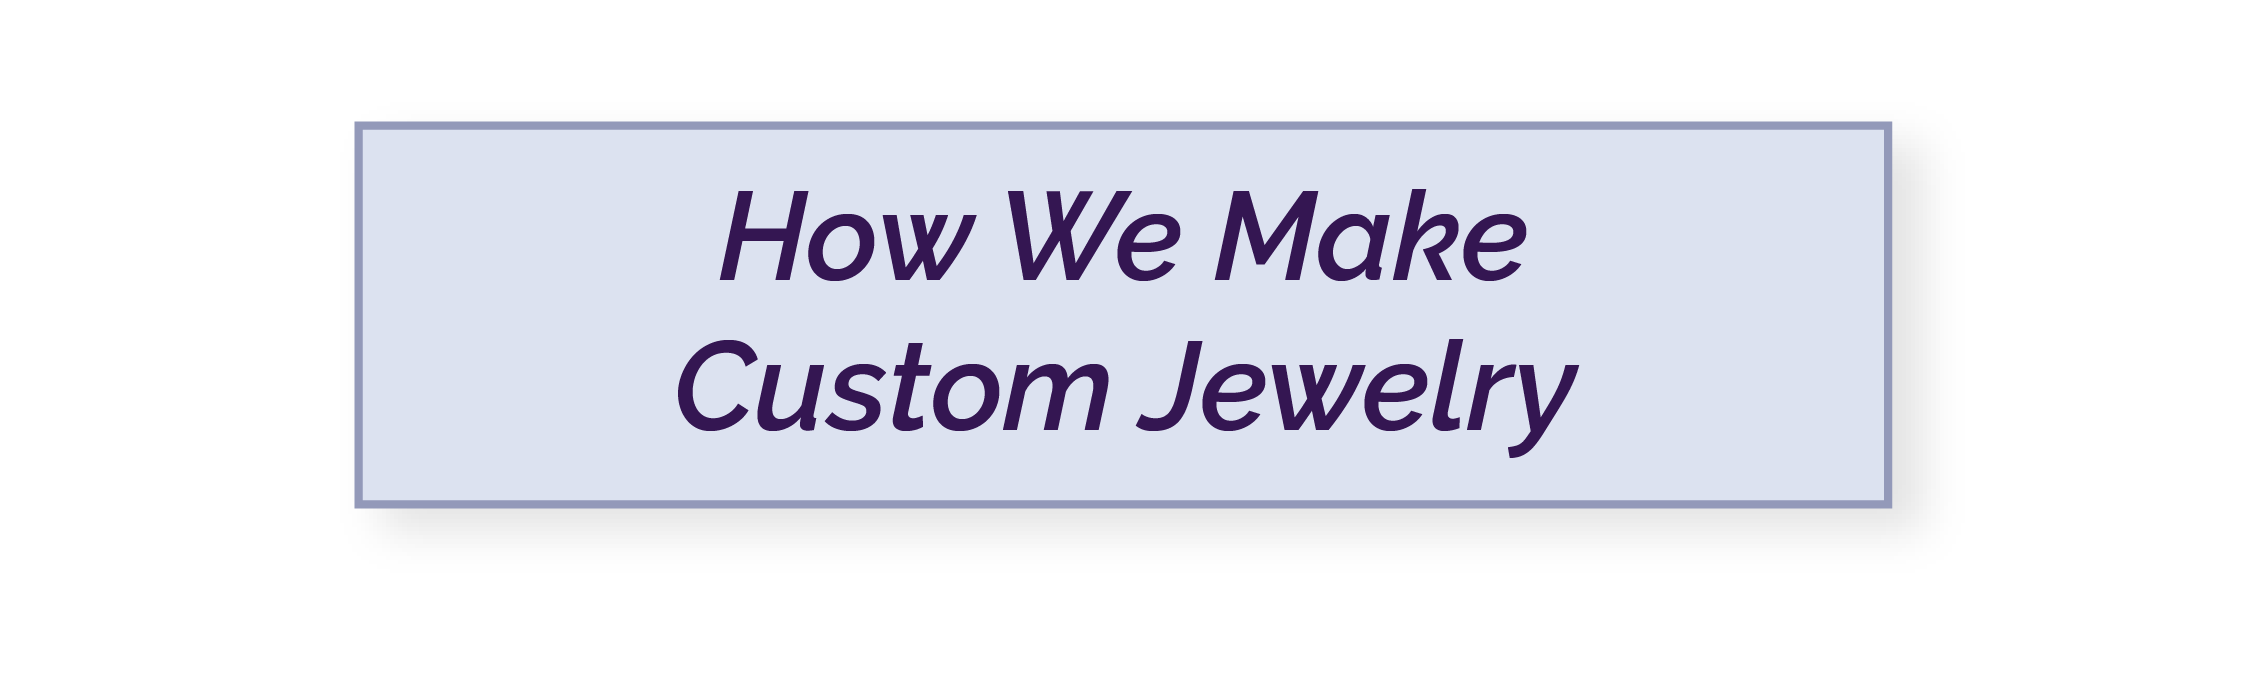 custom_jewelry